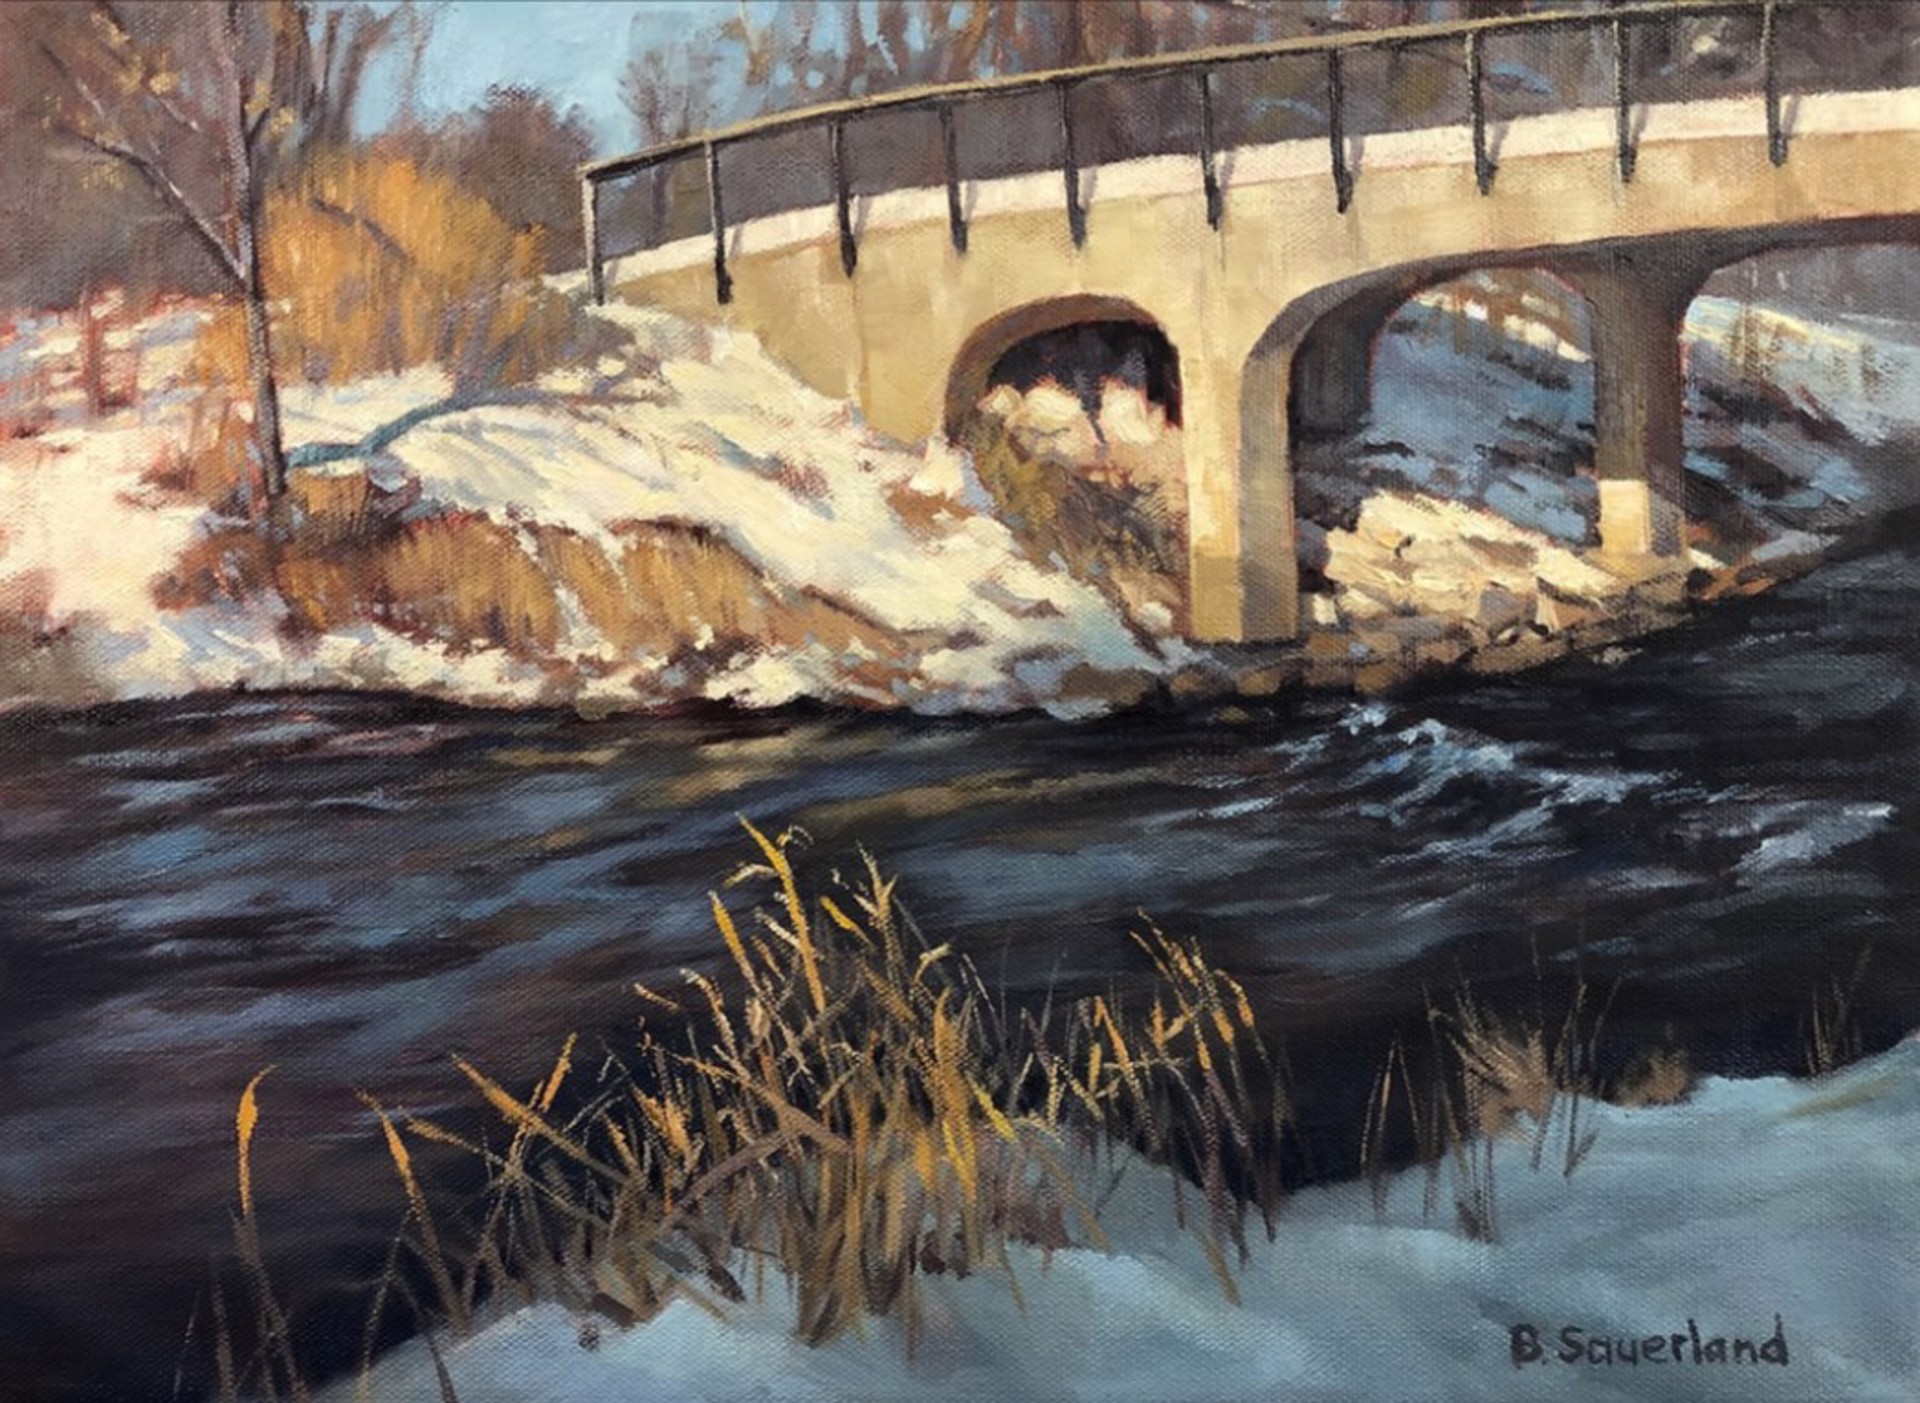 Water Under the Bridge by Brian Sauerland